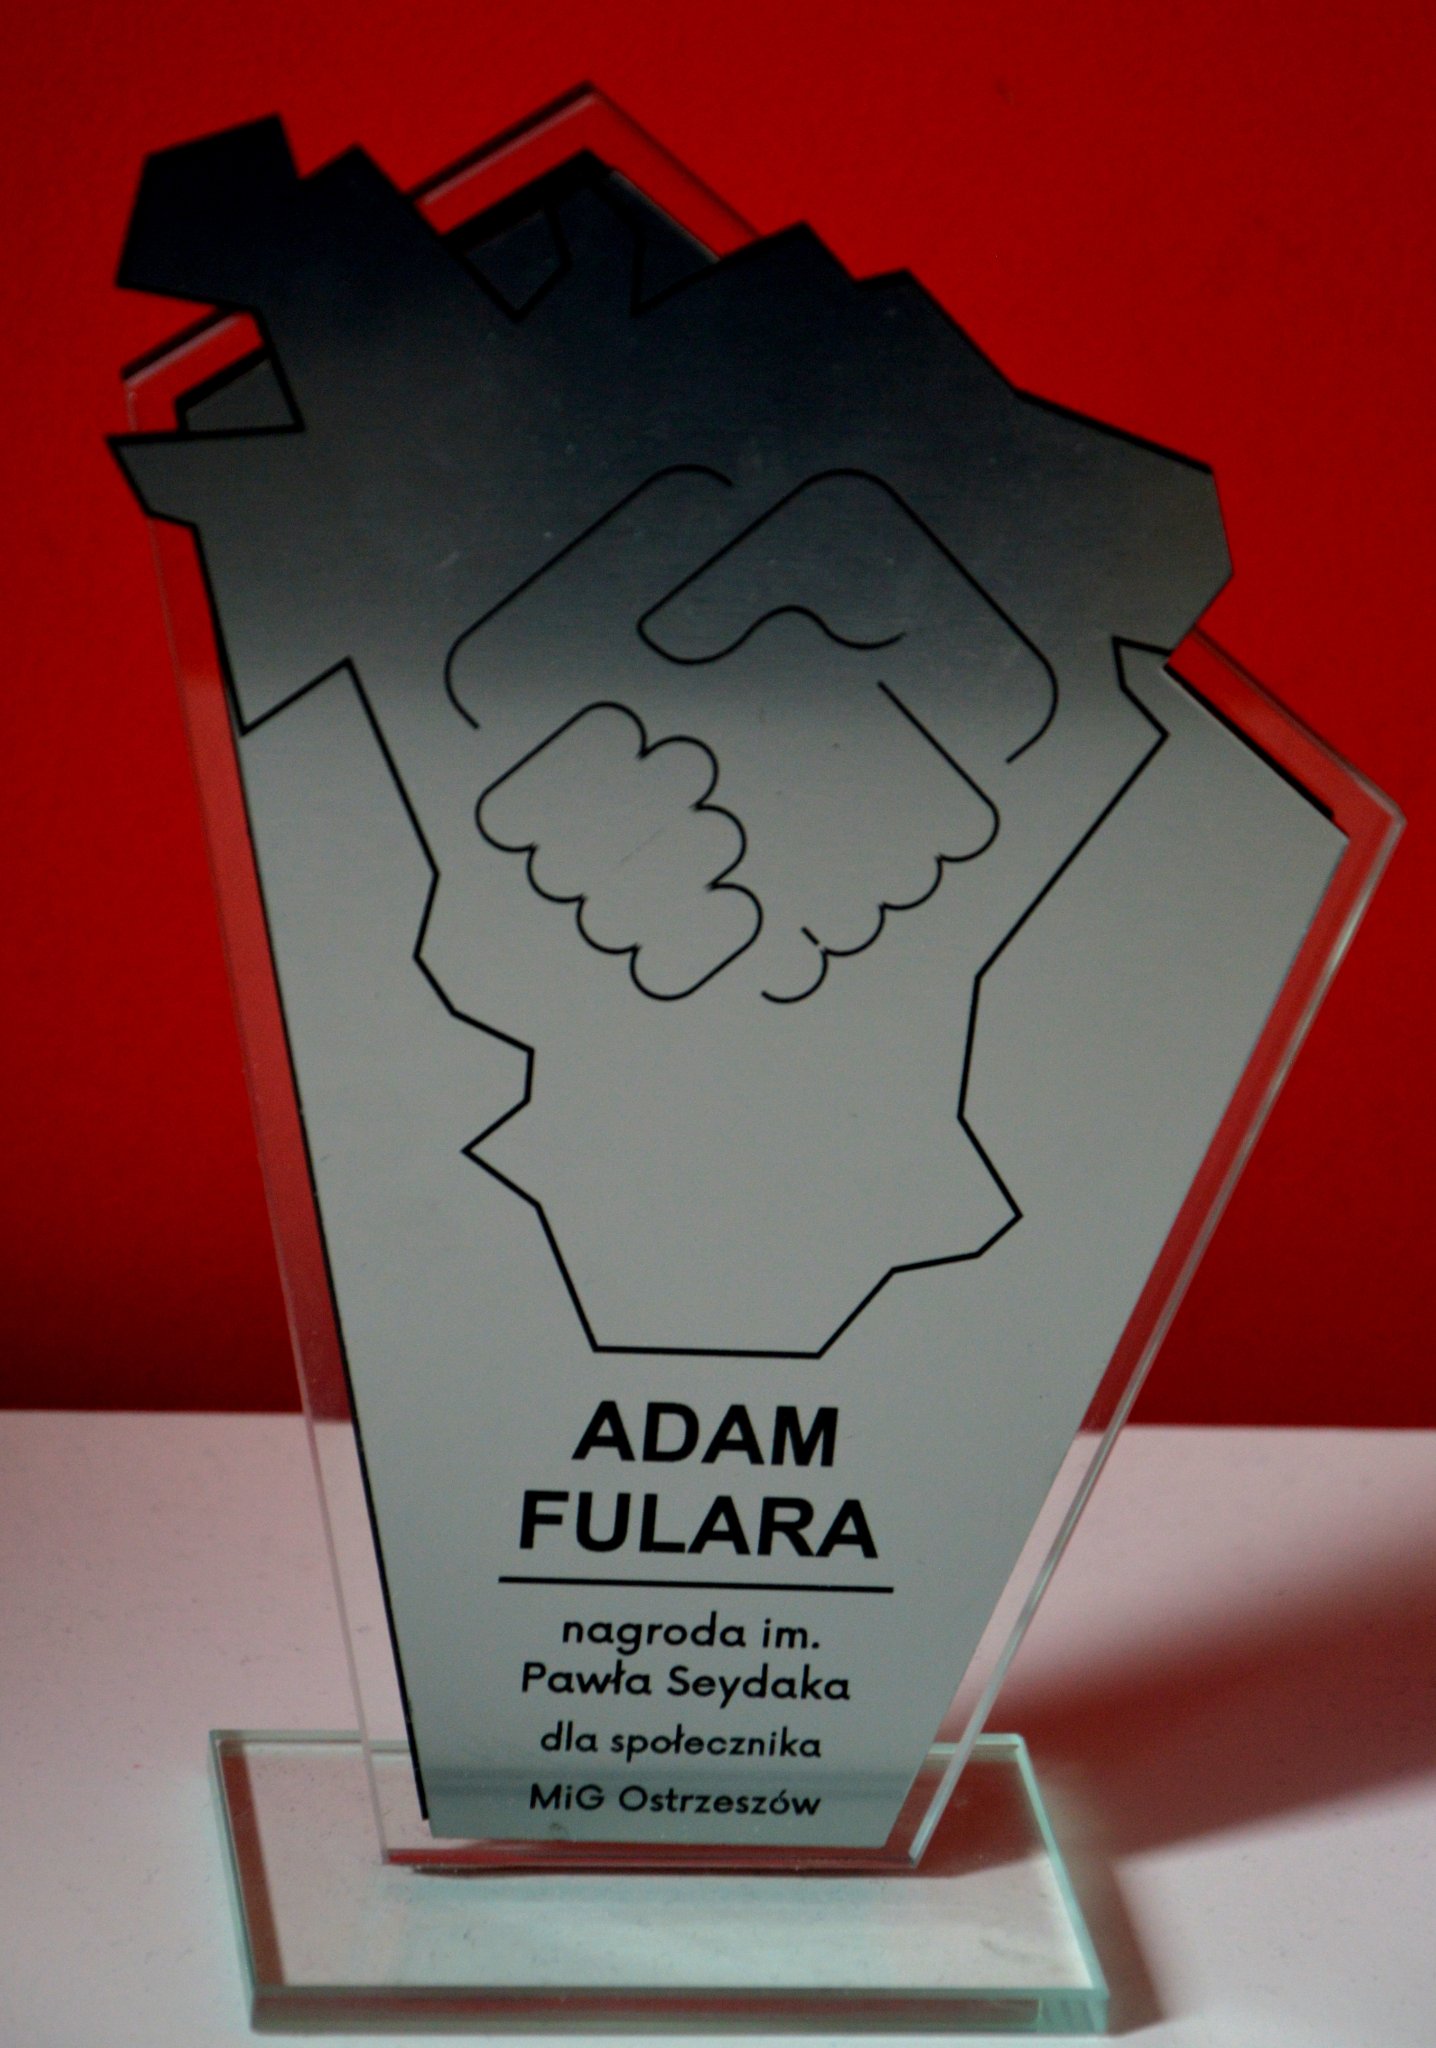 Award for achievements for Ostrzeszow city. 